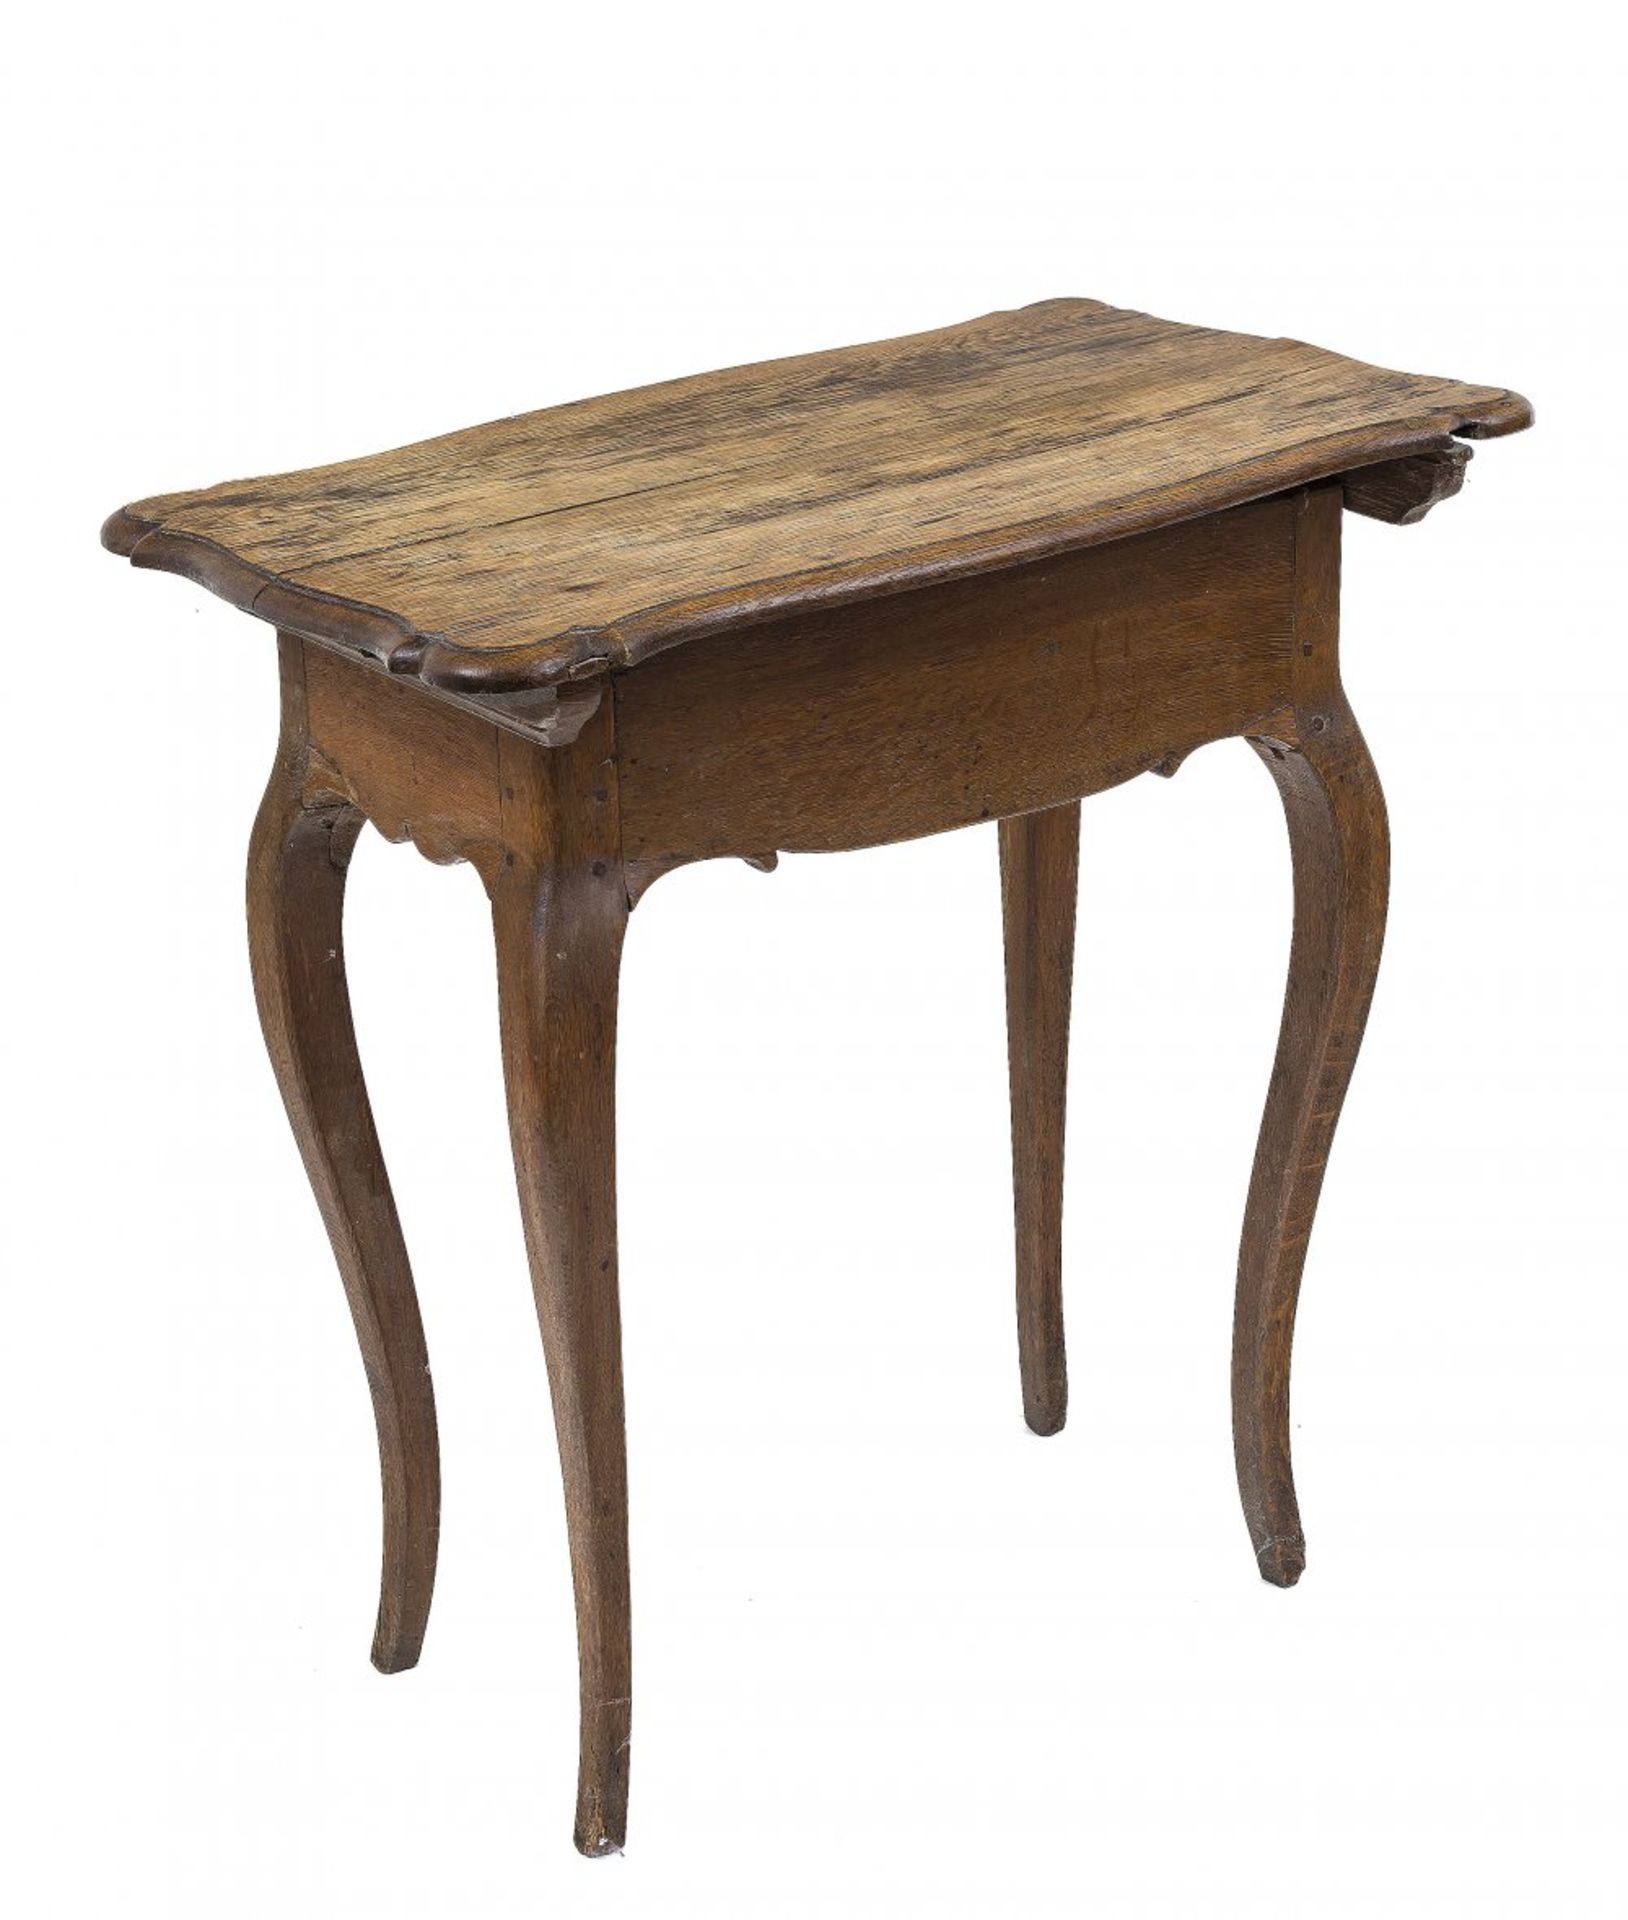 Kleines Tischchen (Beistelltisch)Deutsch, 19. Jh. Platte m. Riss. 71 x 68 x 44,5 cm.- - -27.00 %